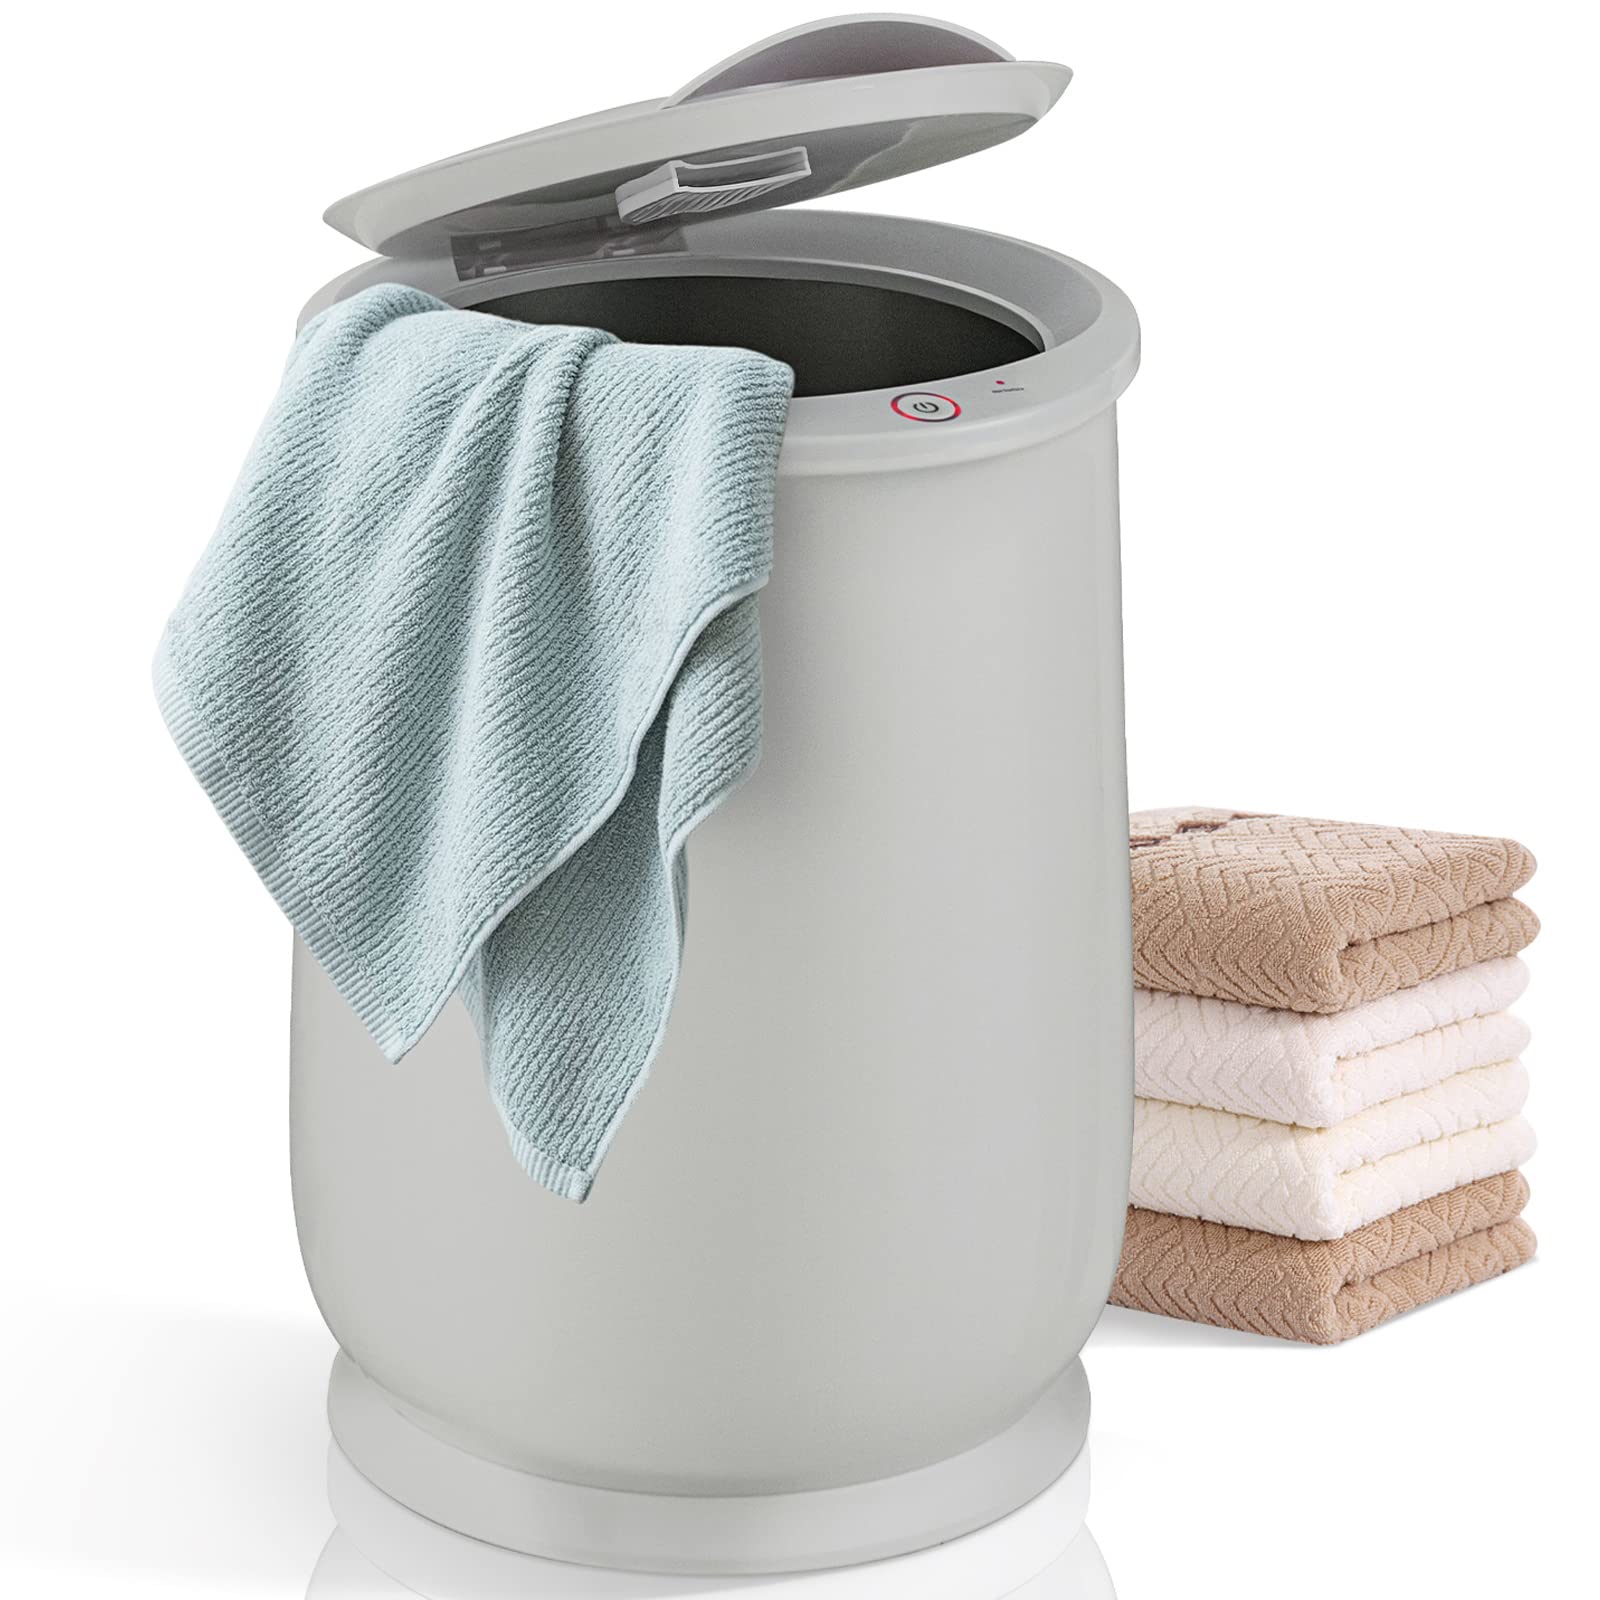 Giantex Towel Warmer Bucket for Bathroom, 21 L